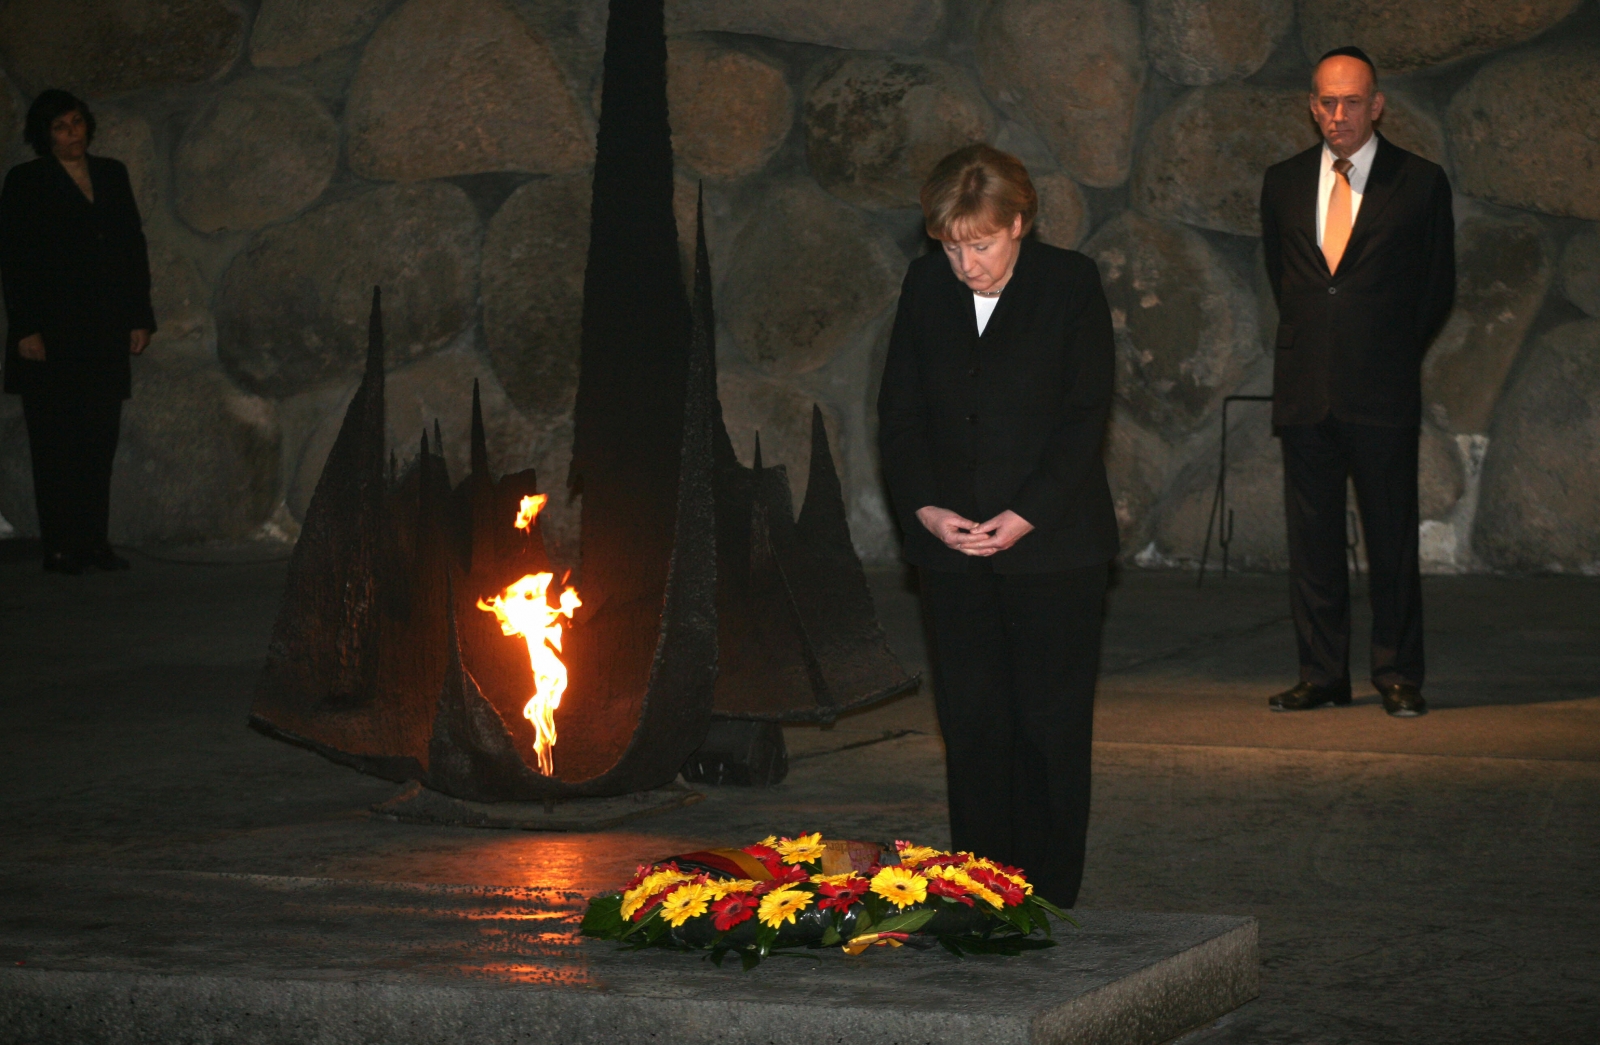 Merkel Yad Vashem wreath